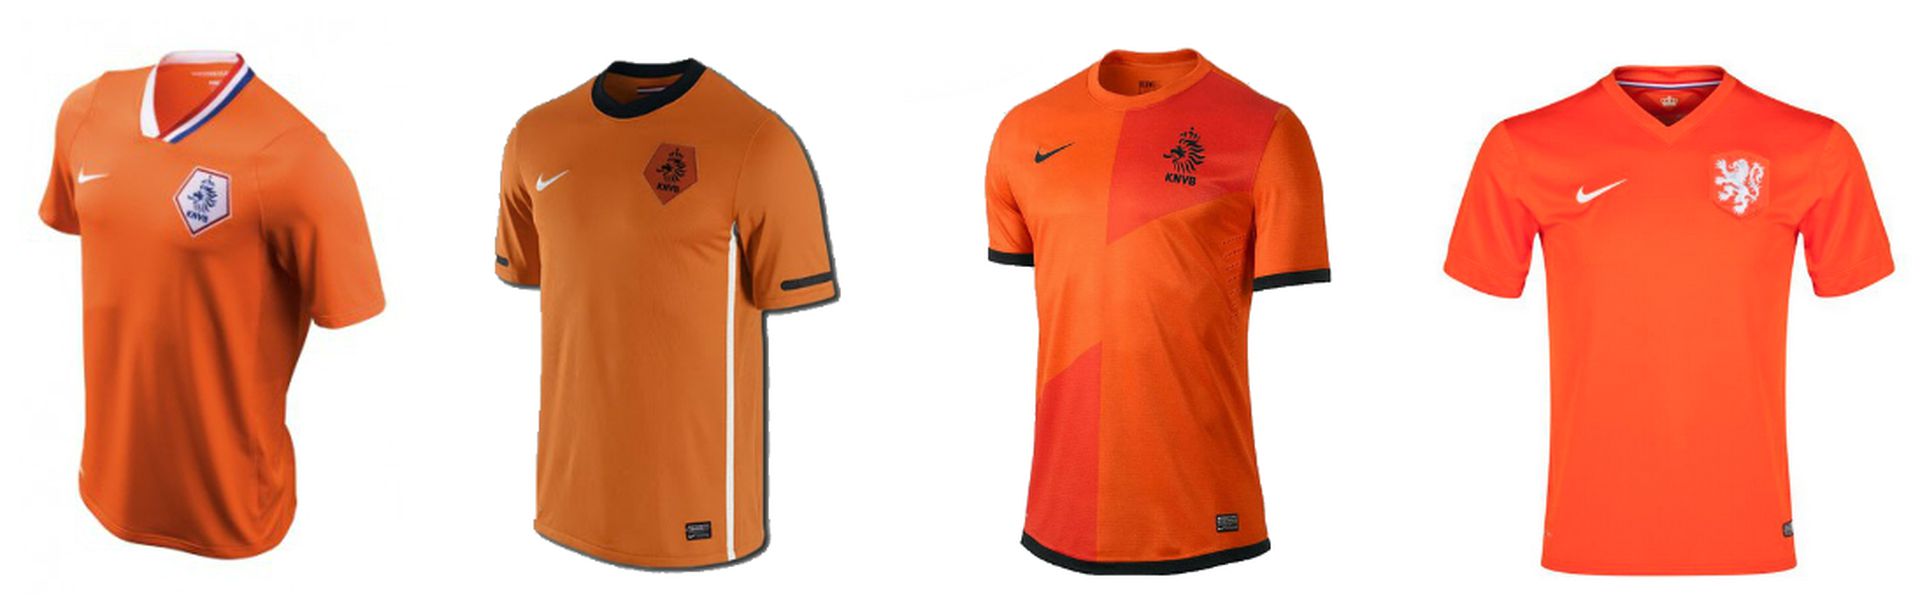 Klem bak auteursrechten Nederlands elftal speelt op WK in effen oranje met retro-embleem - NRC